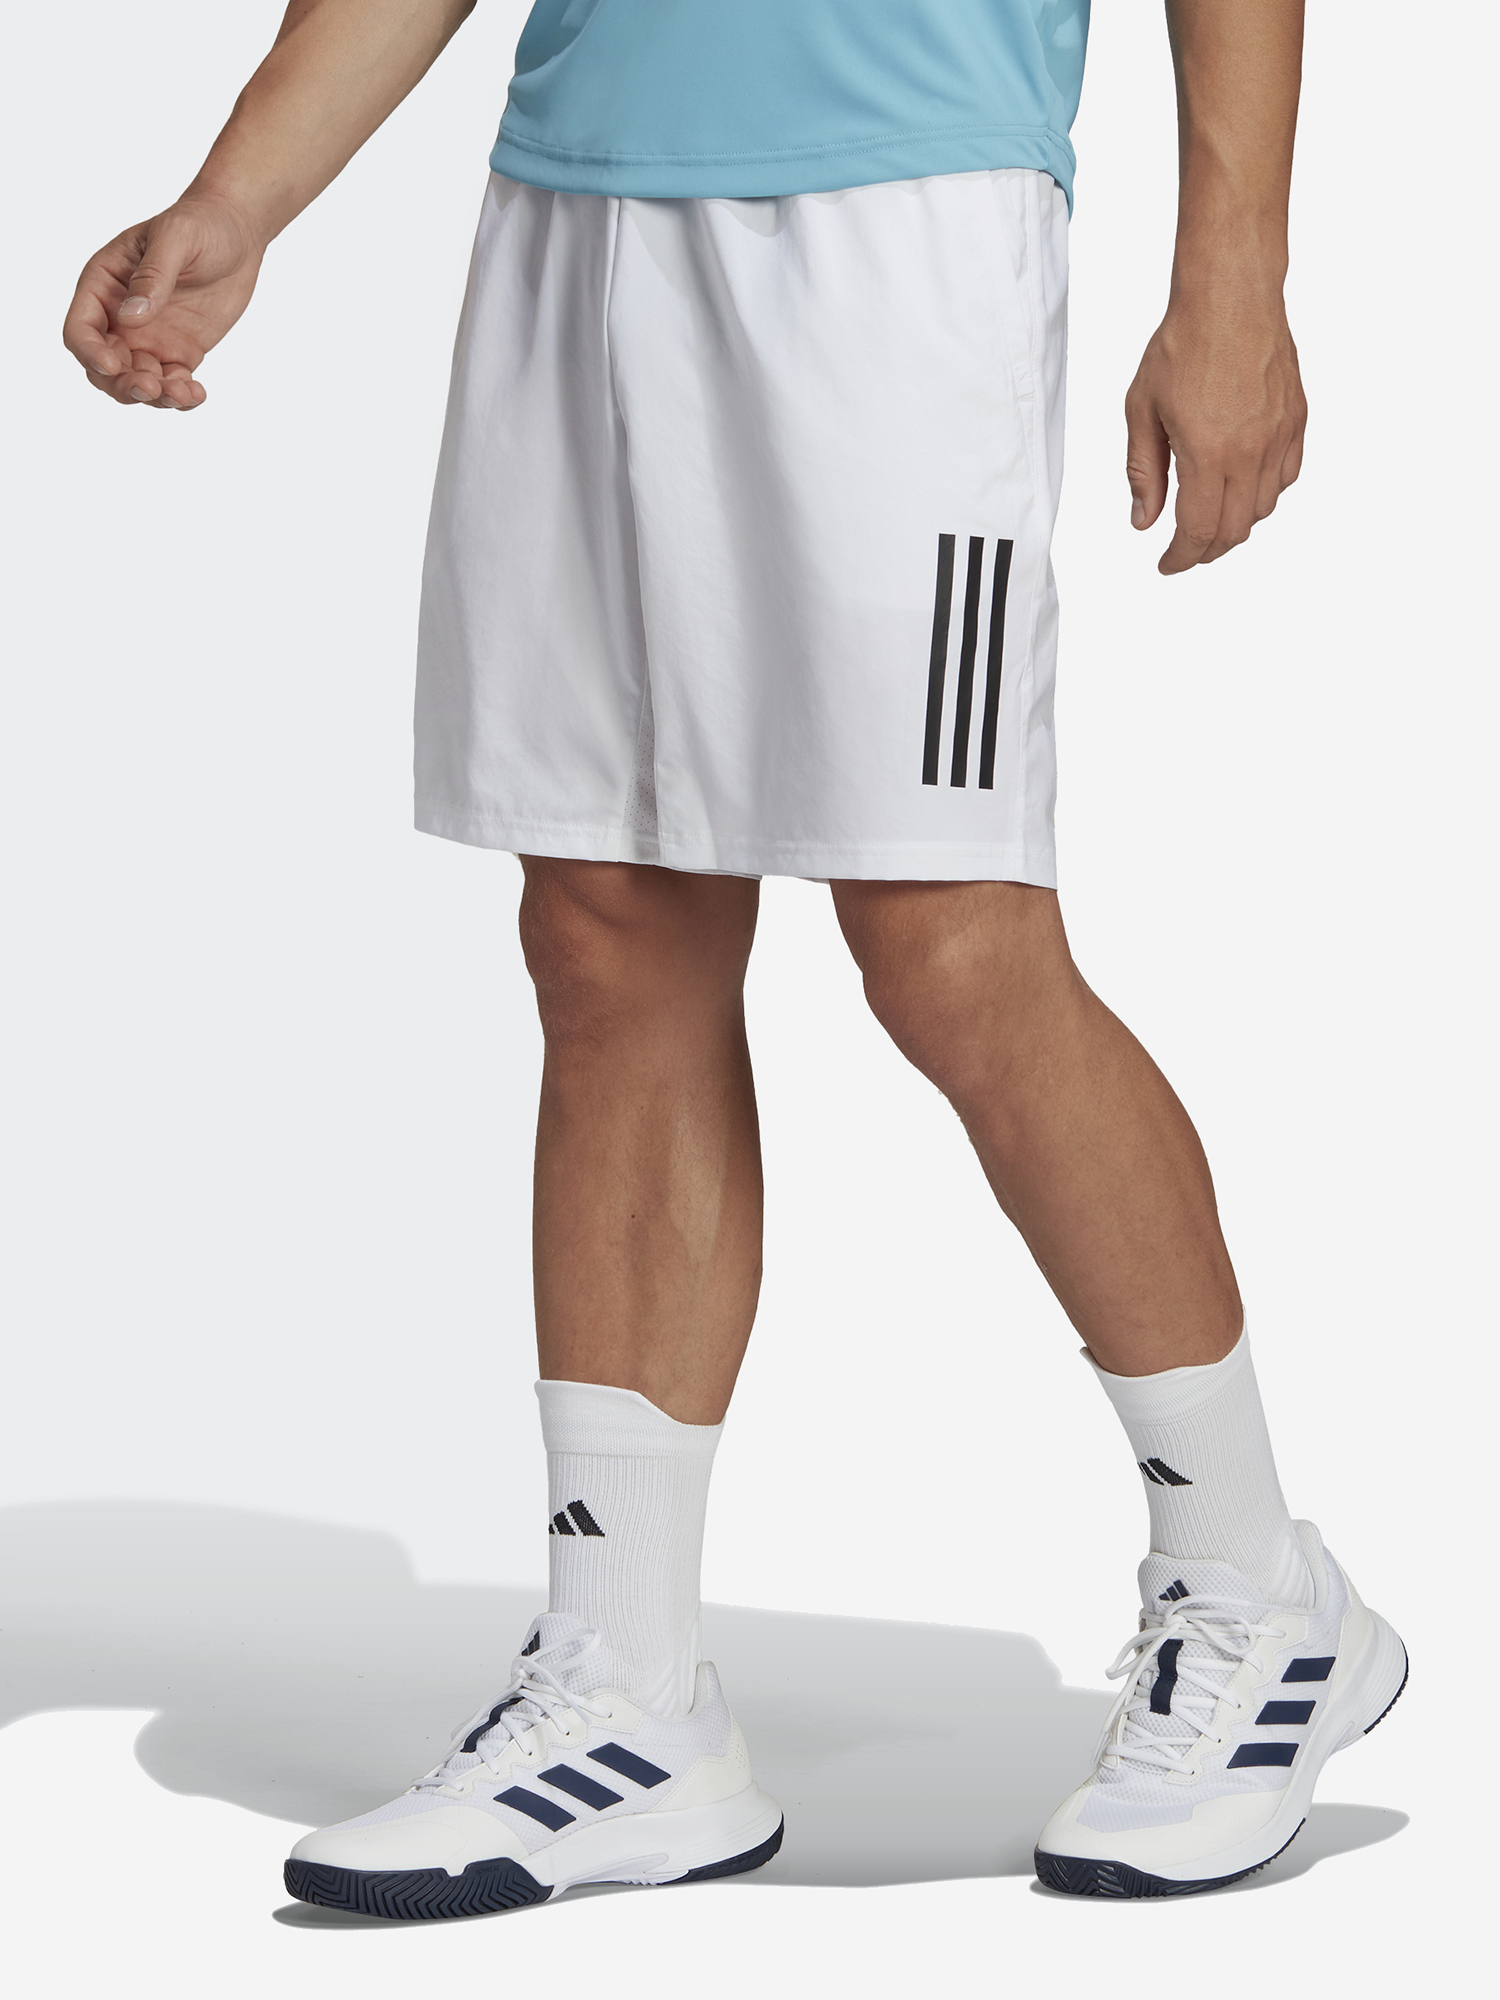 Шорты мужские adidas club, Белый поло мужское adidas club tennis pique белый